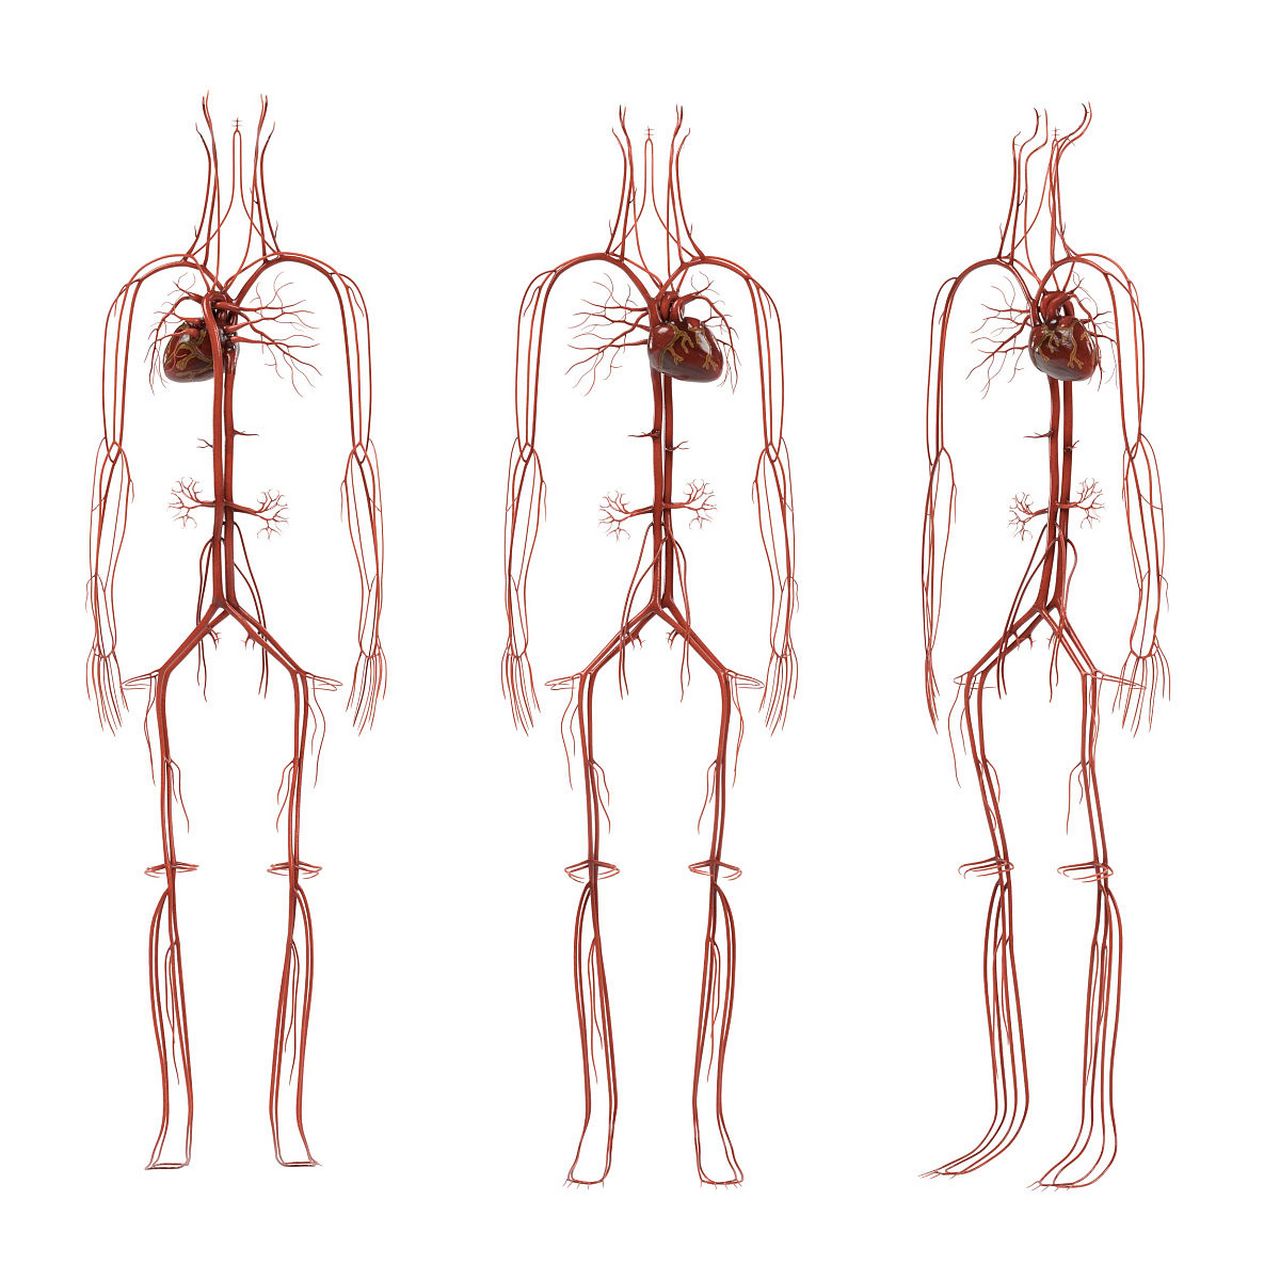 人体的血管有多长呢 人体中的血管包括动脉,静脉和毛细血管三种